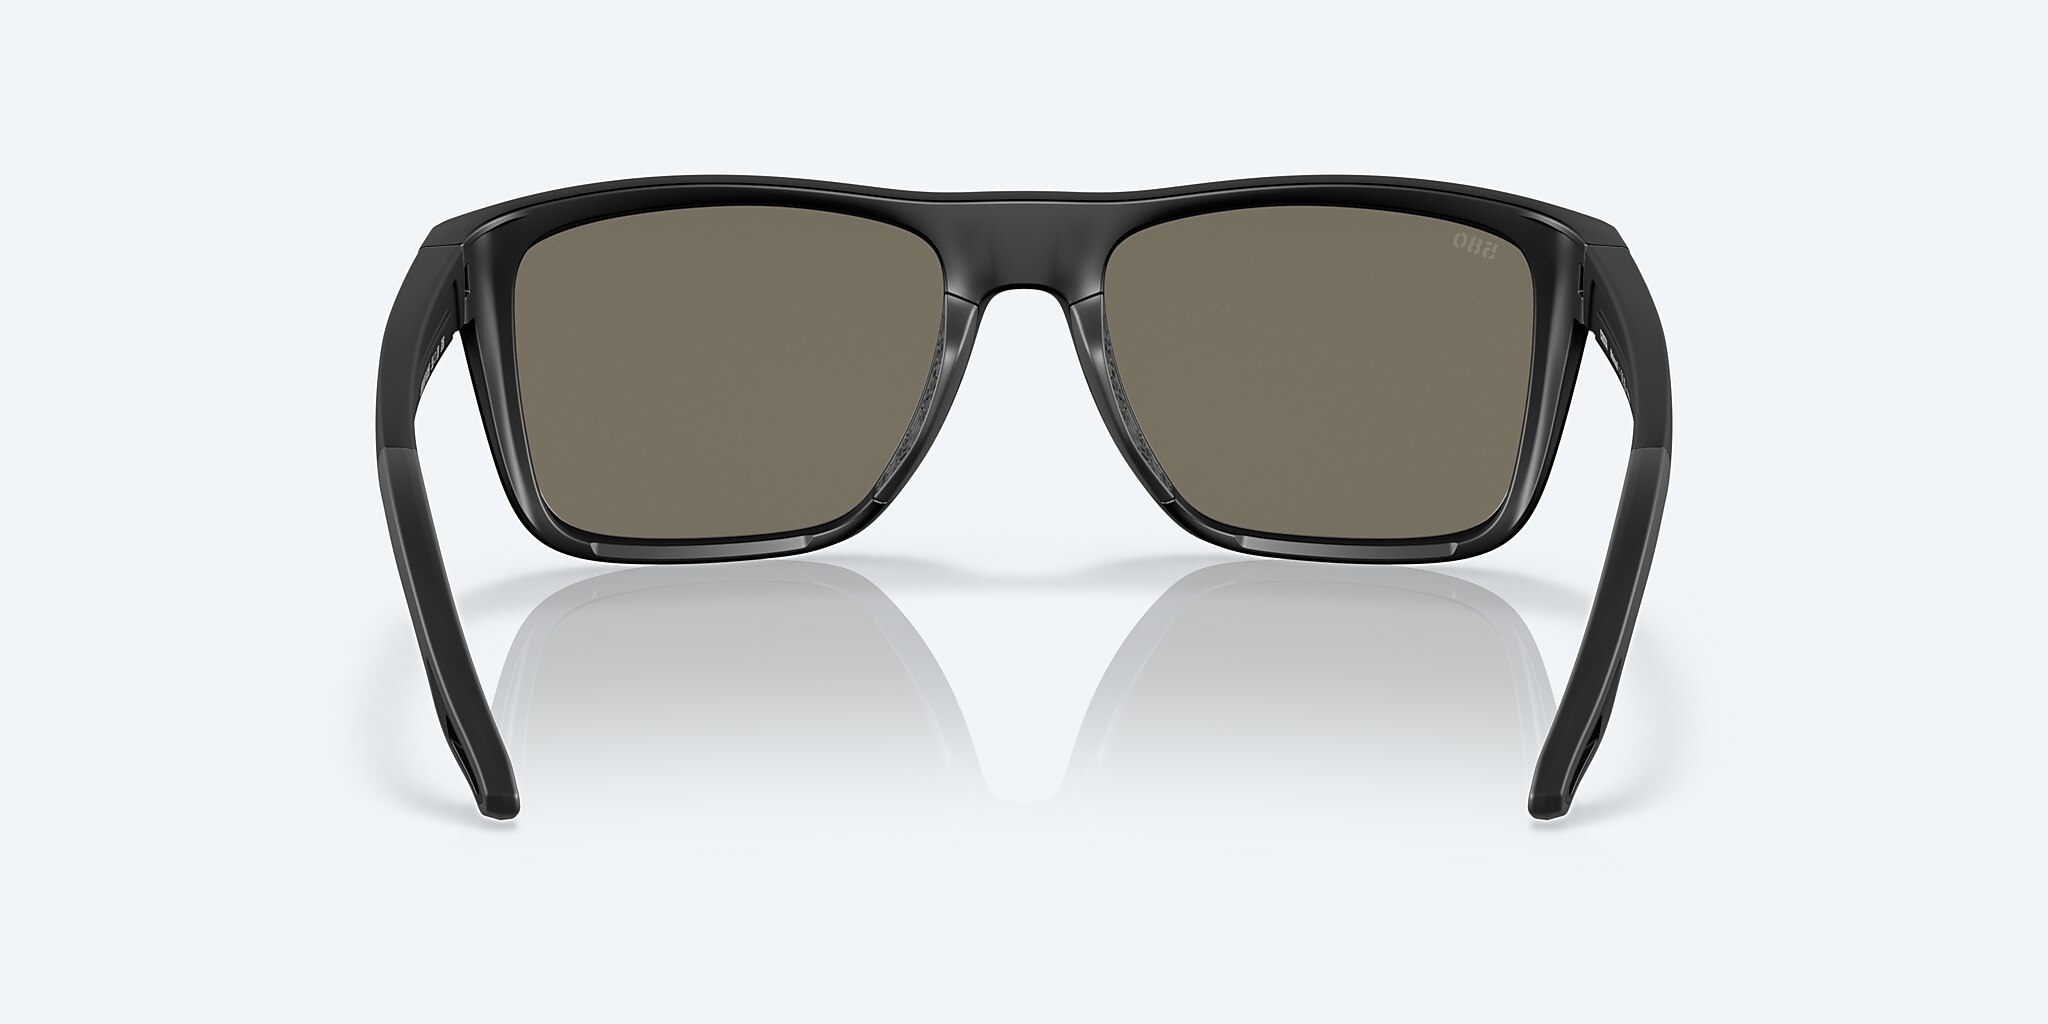 Faguma Z3 2 Pack Red / Blue Polarized Sunglasses for Men 100% UV